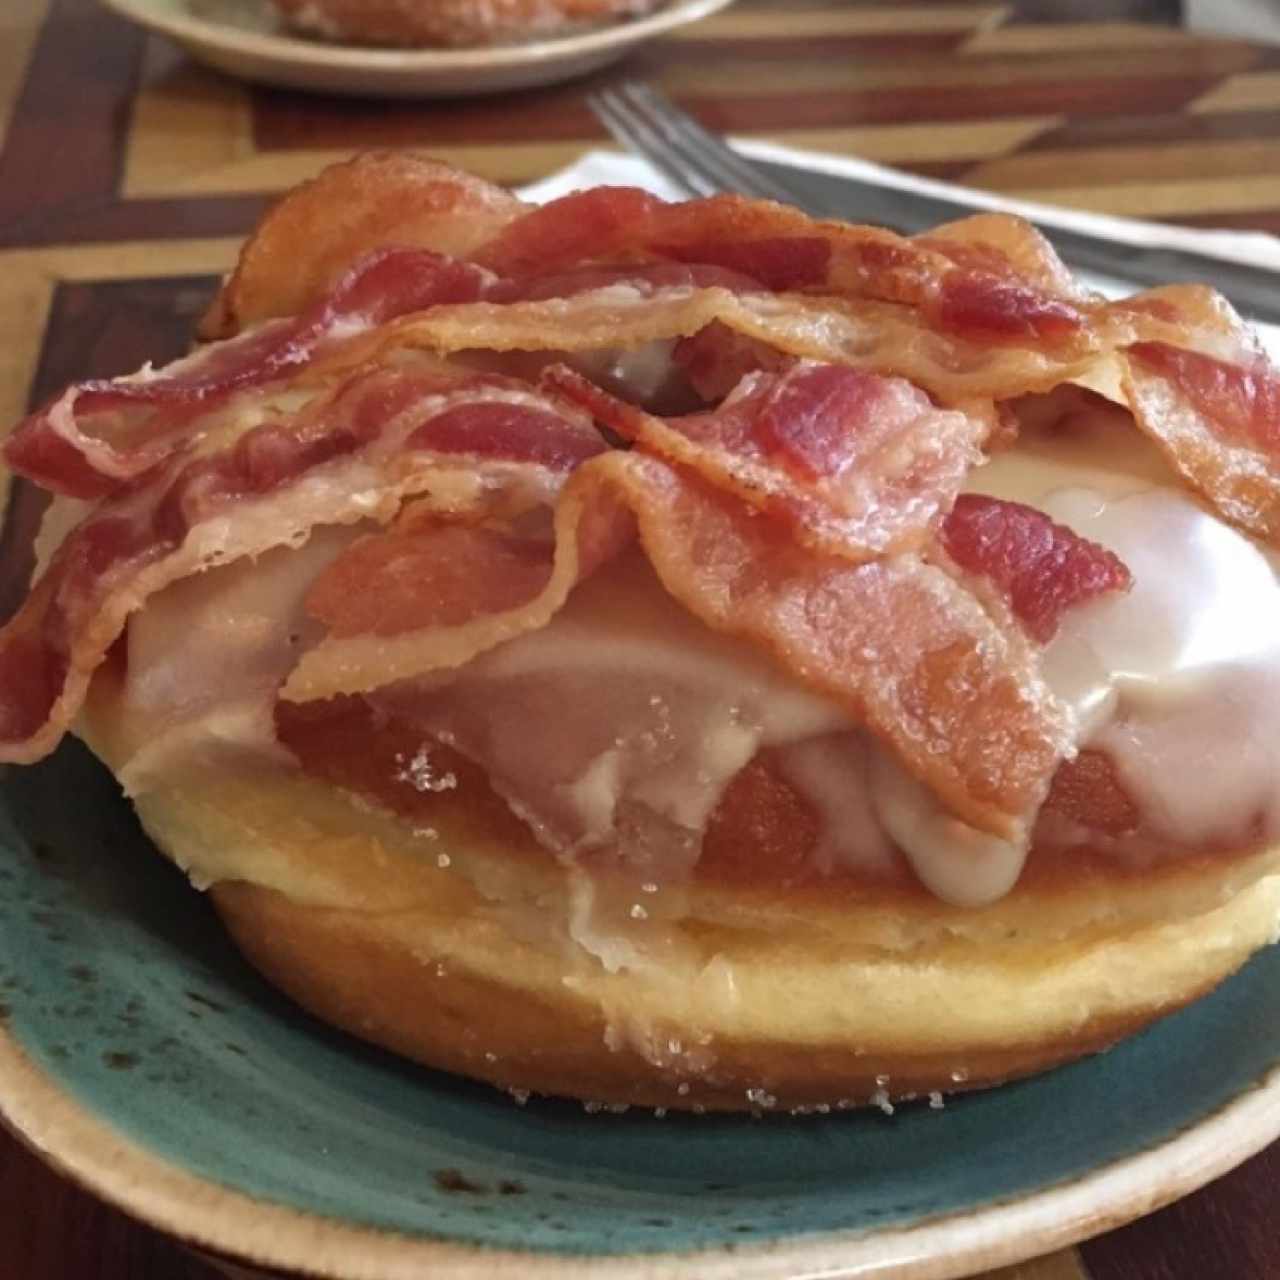 Bacon Glazed Donut